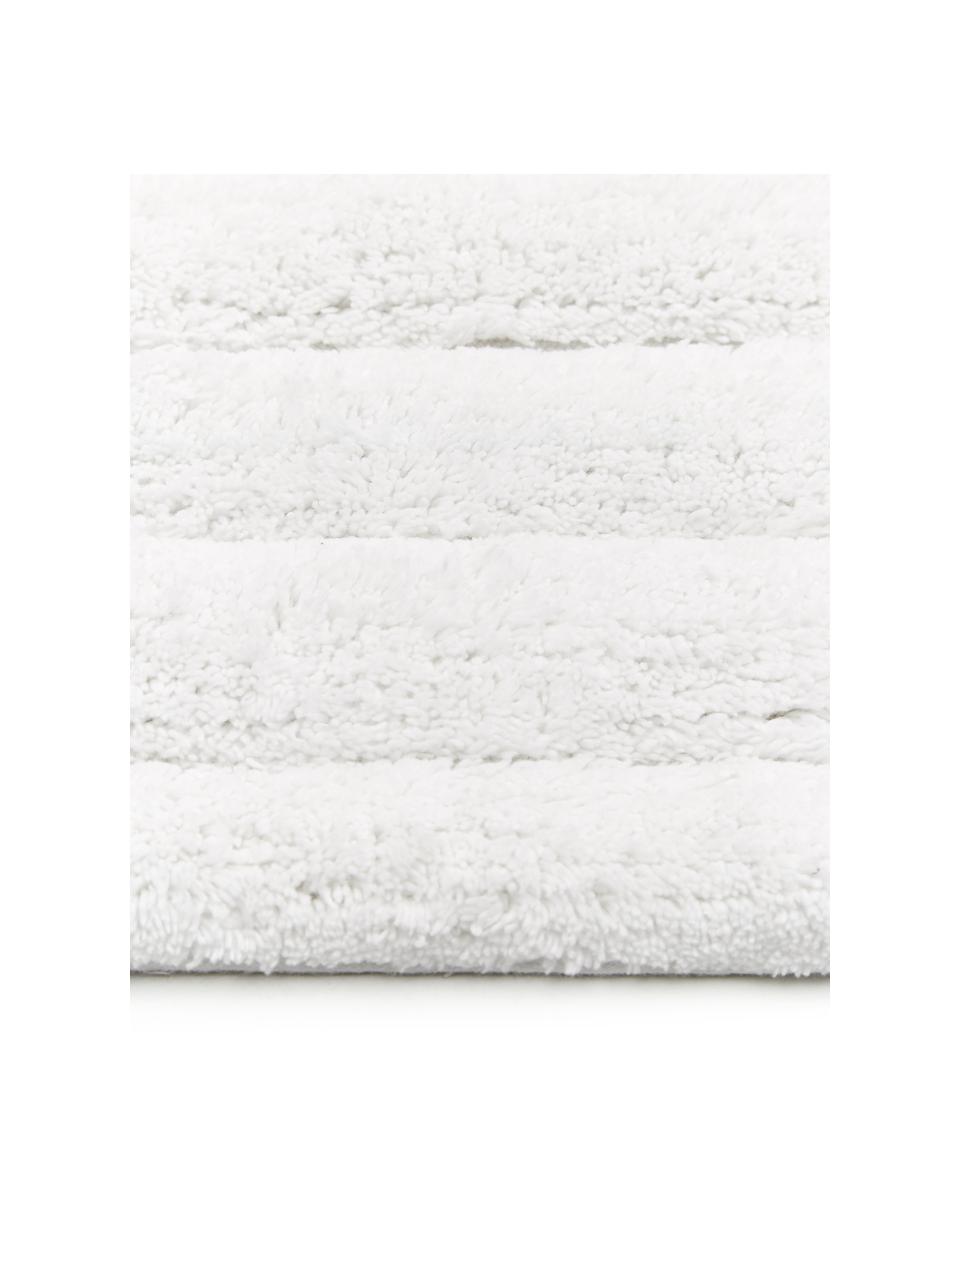 Flauschiger Badvorleger Board in Weiss, 100% Baumwolle,
schwere Qualität, 1900 g/m², Weiss, B 50 x L 60 cm